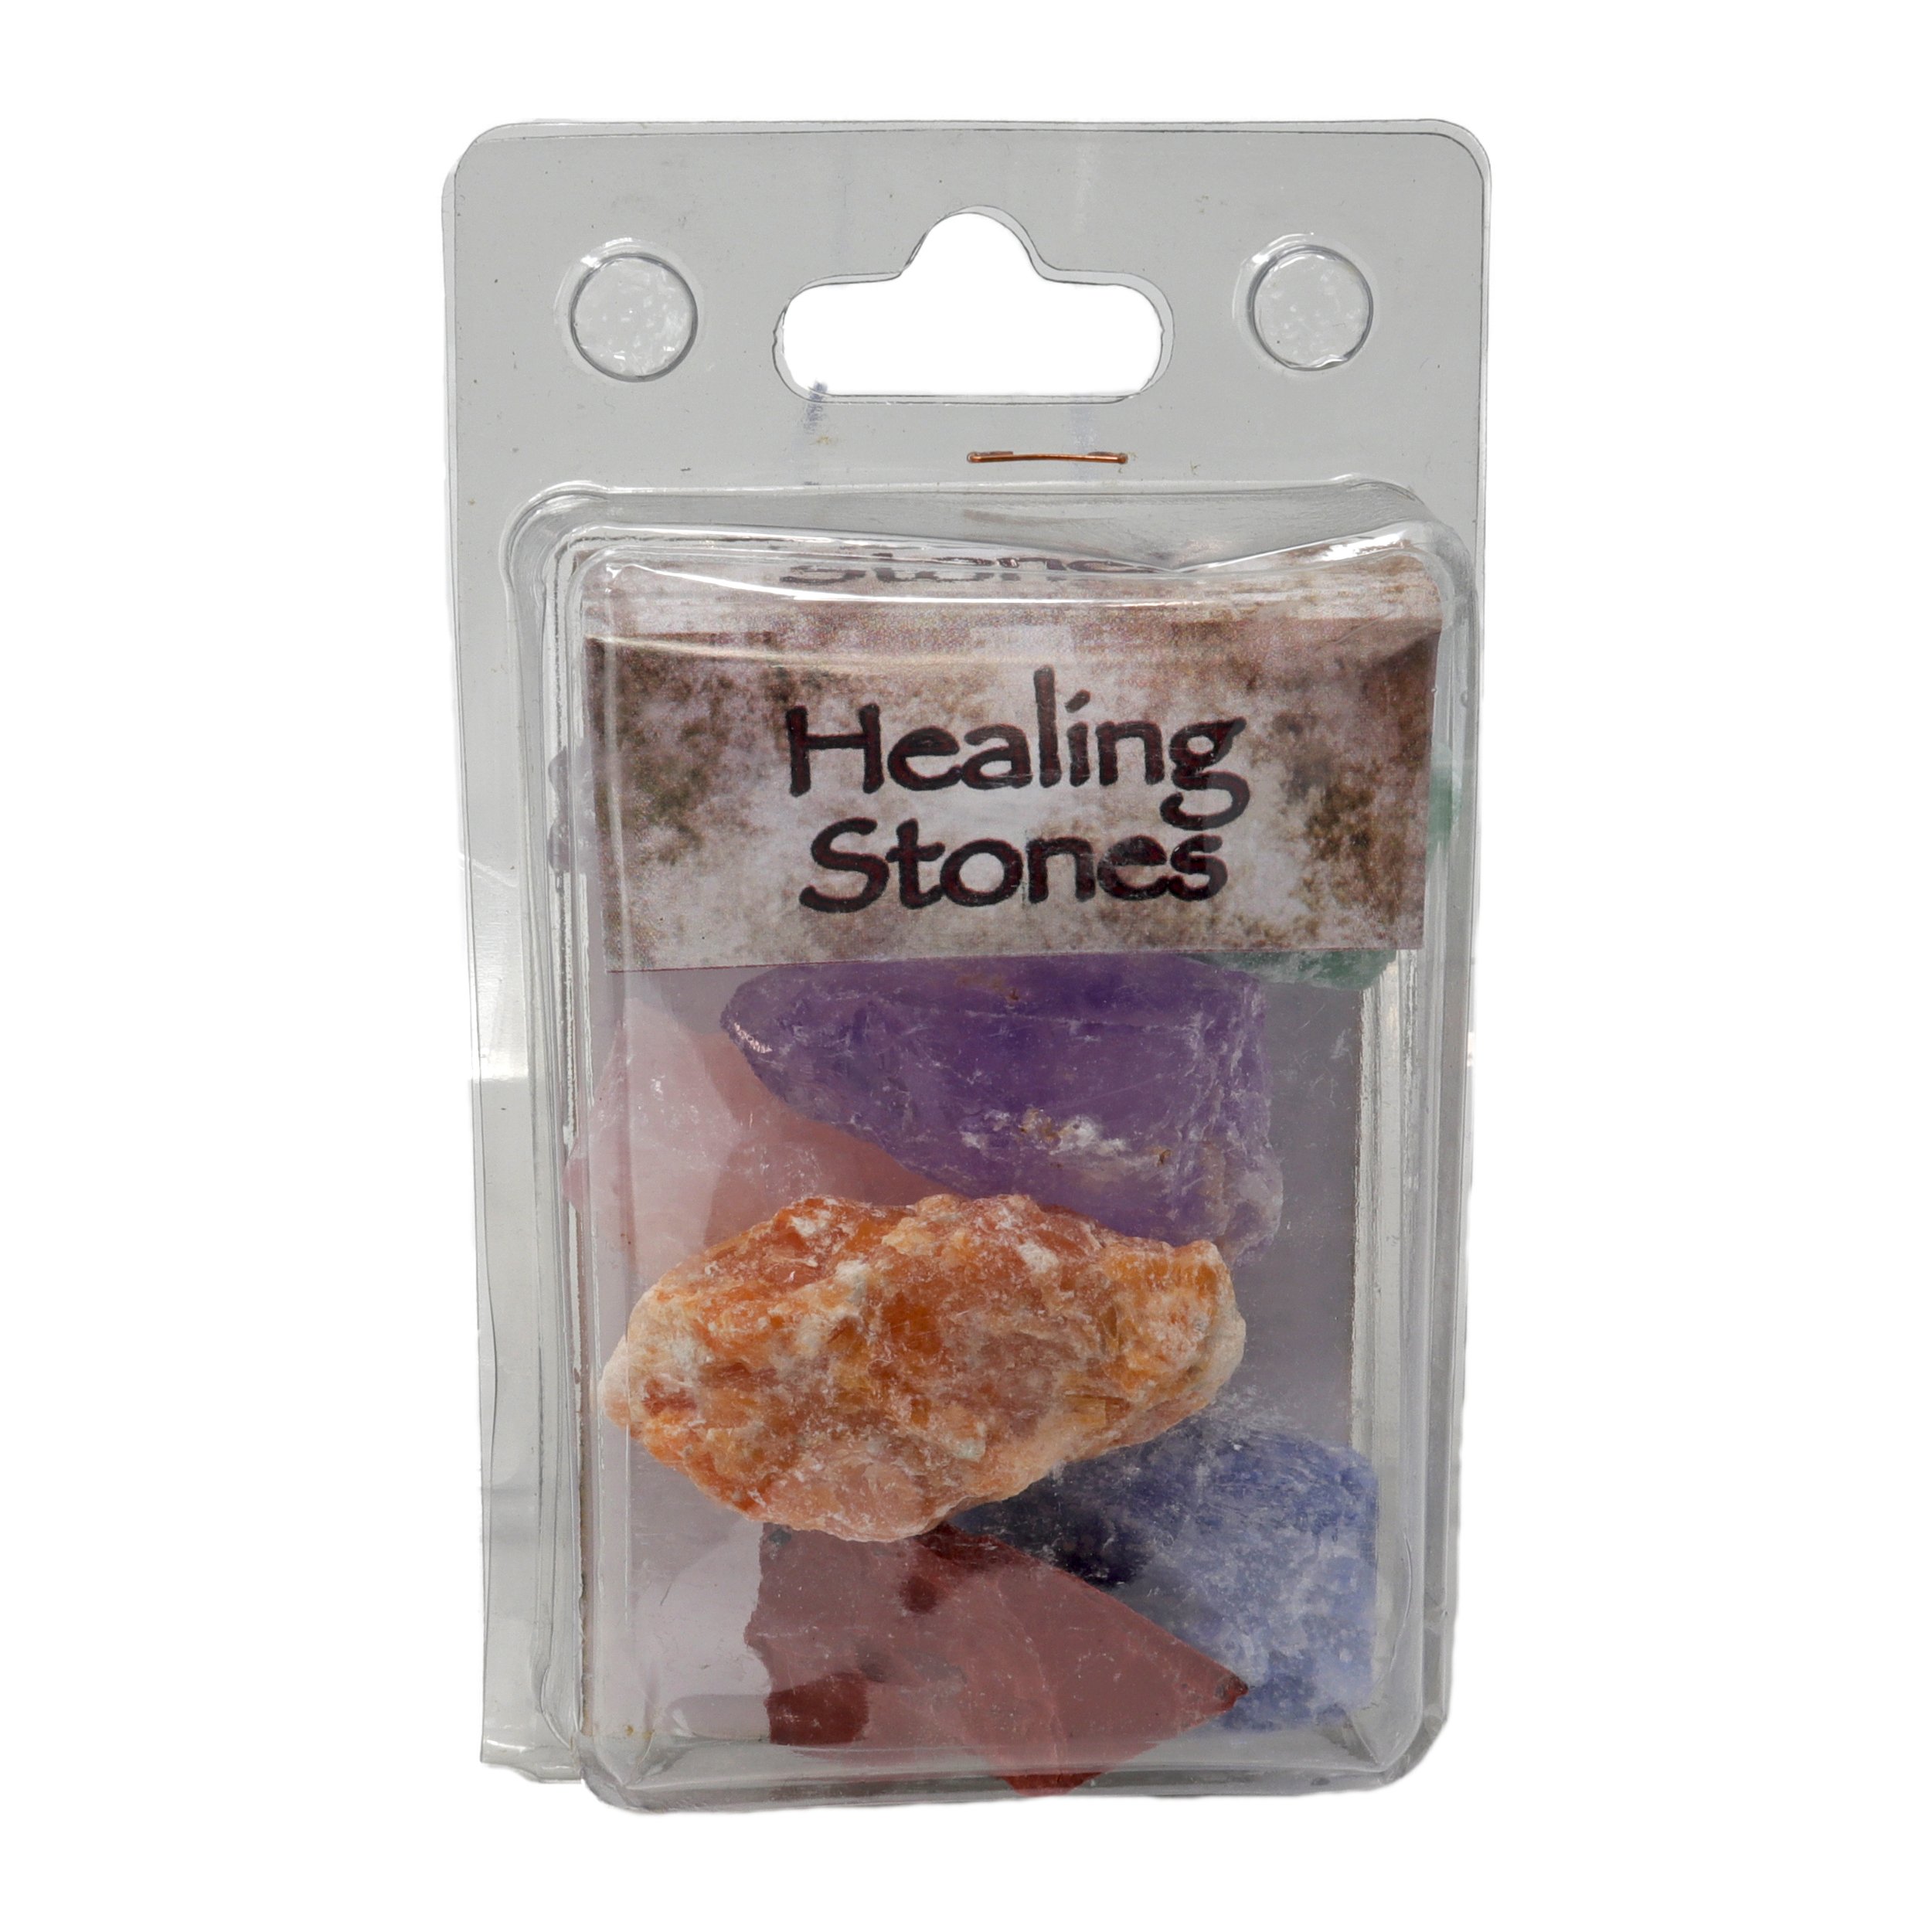 Healing Stones Package